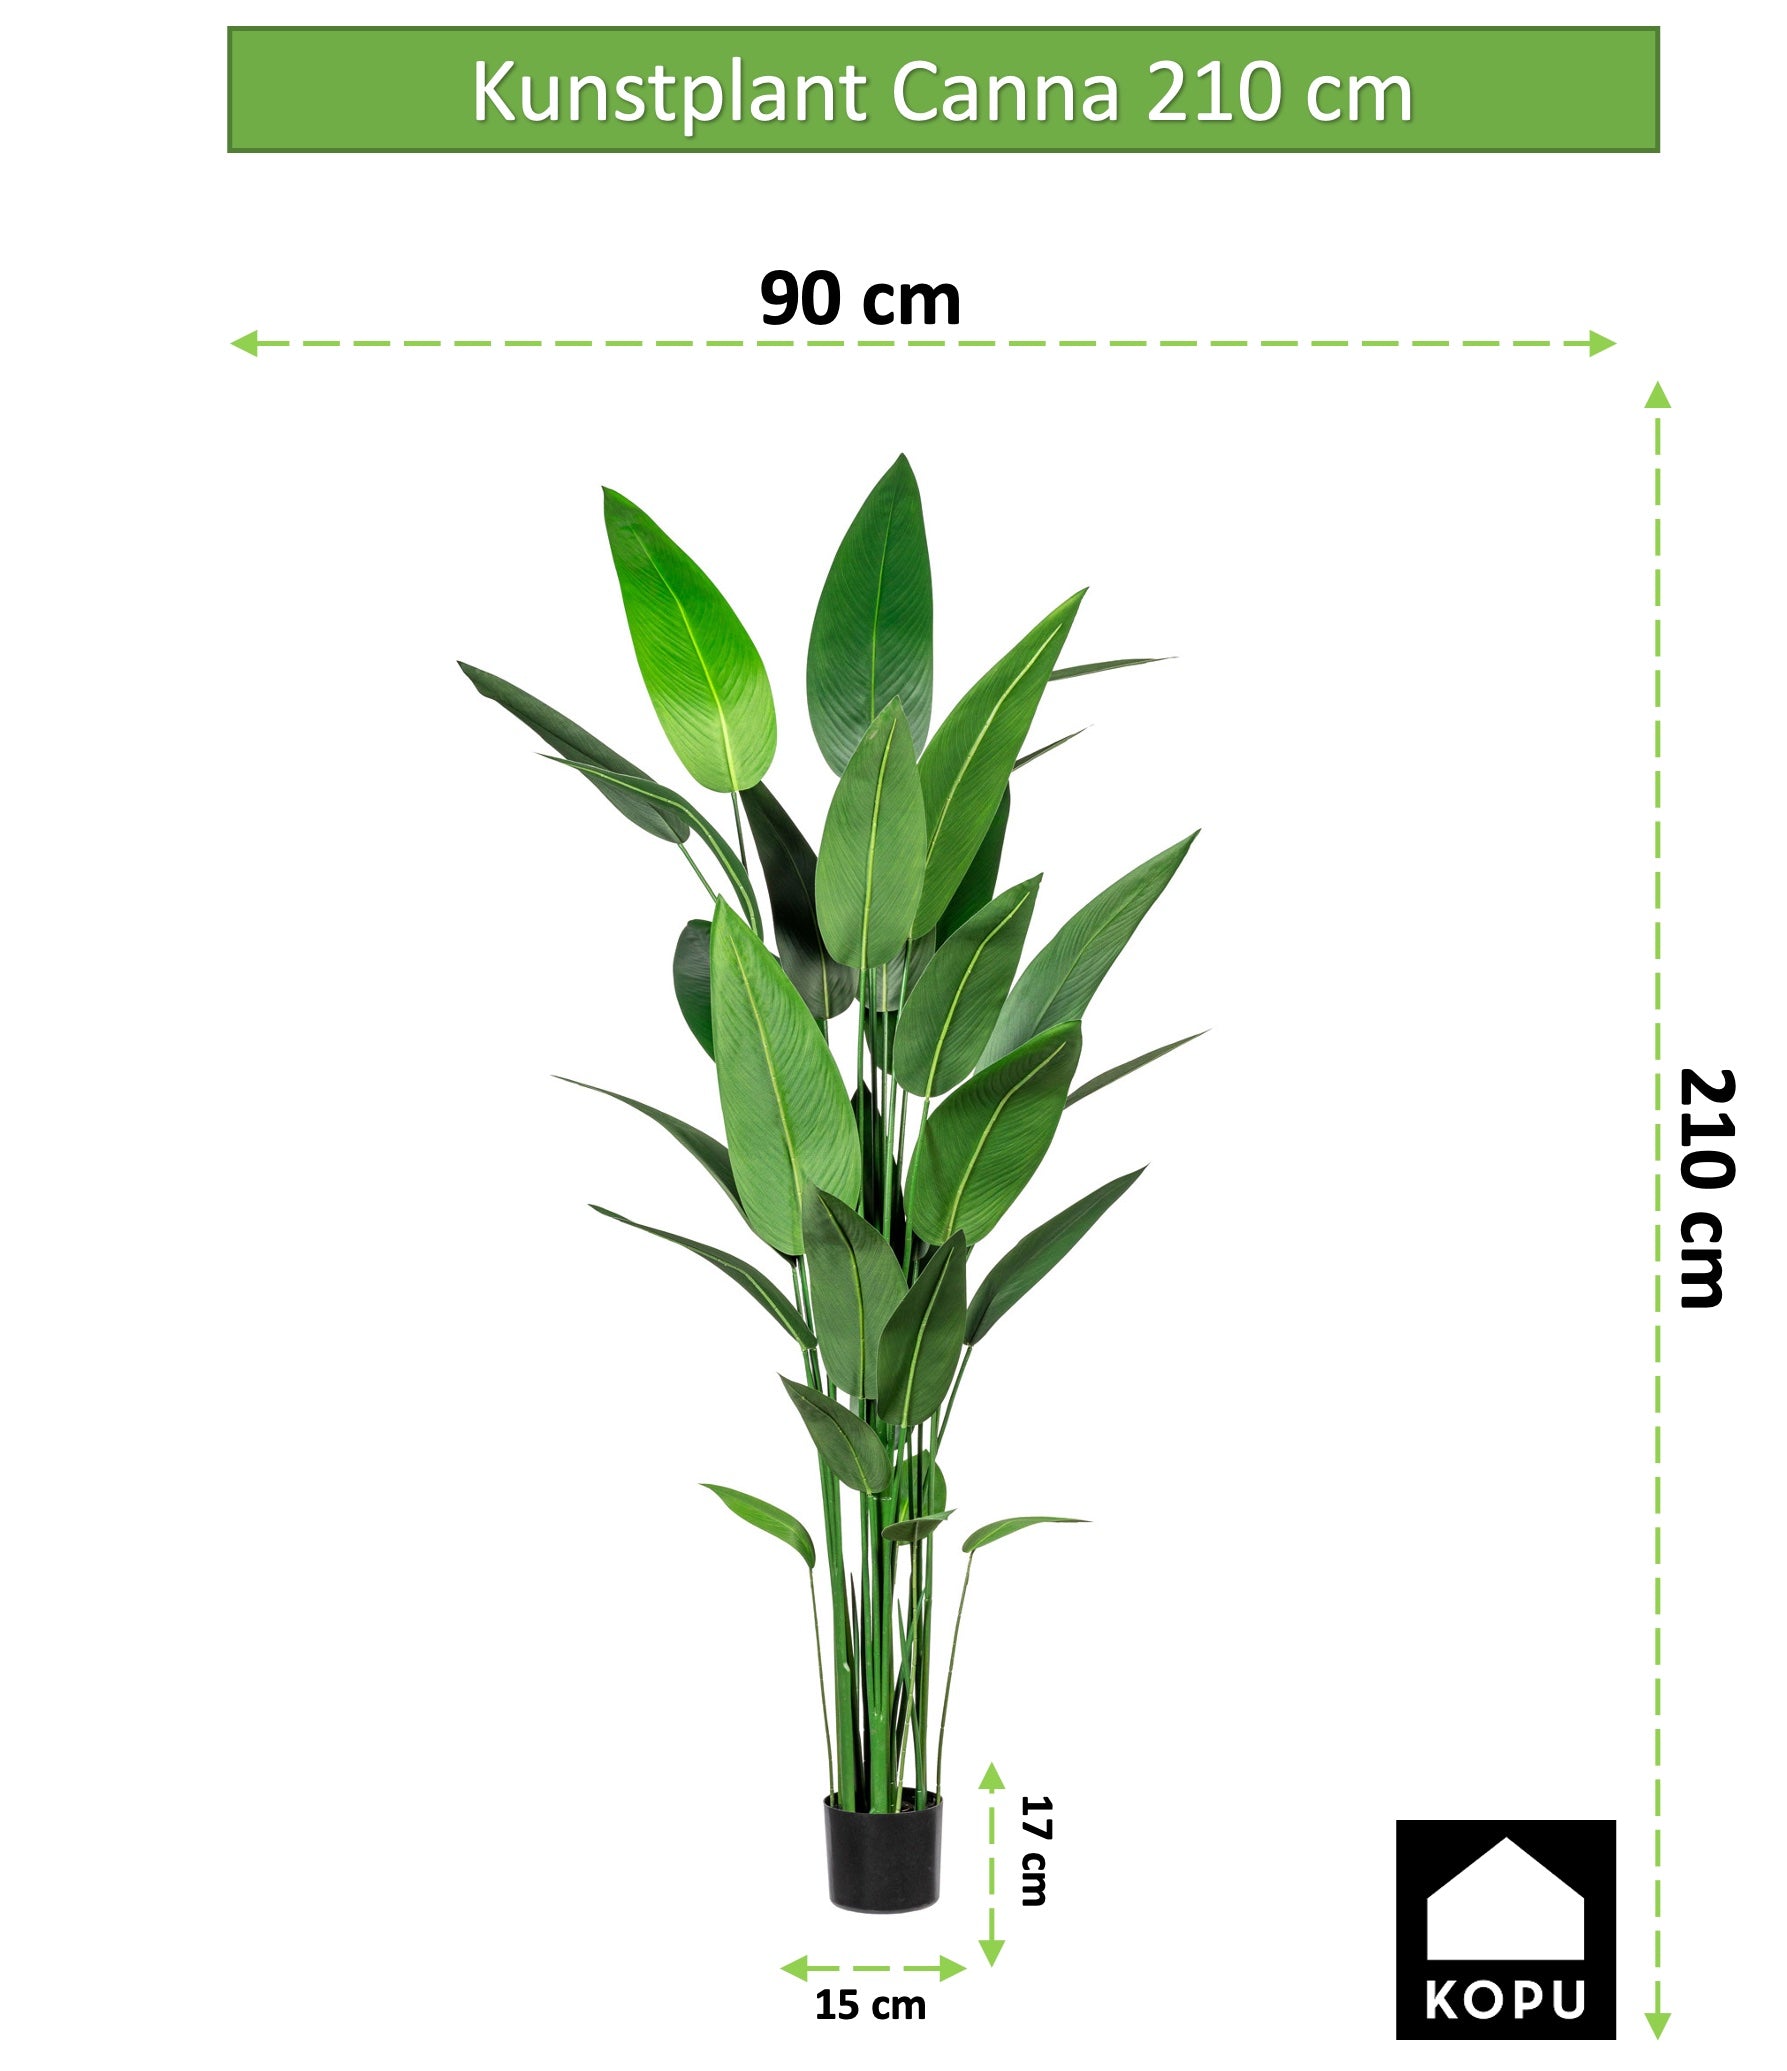 Kopu® Kunstpflanze Canna 210 cm 32 Blätter - im schwarzen Topf - Blumenschilf